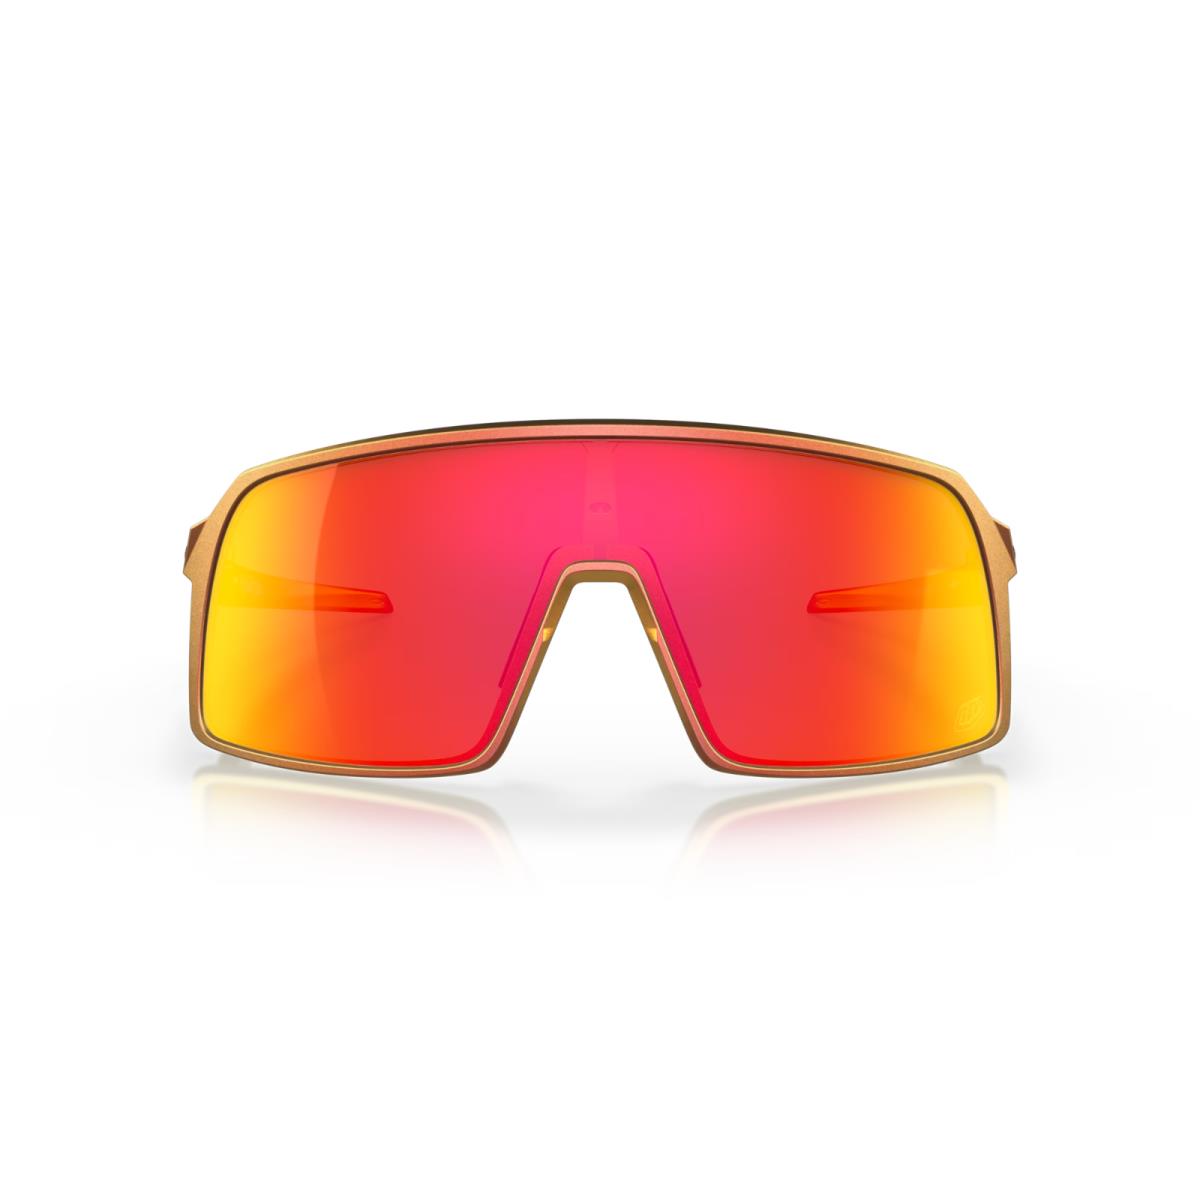 Oakley sunglasses  - Frame: Red Gold Shift, Lens: 0